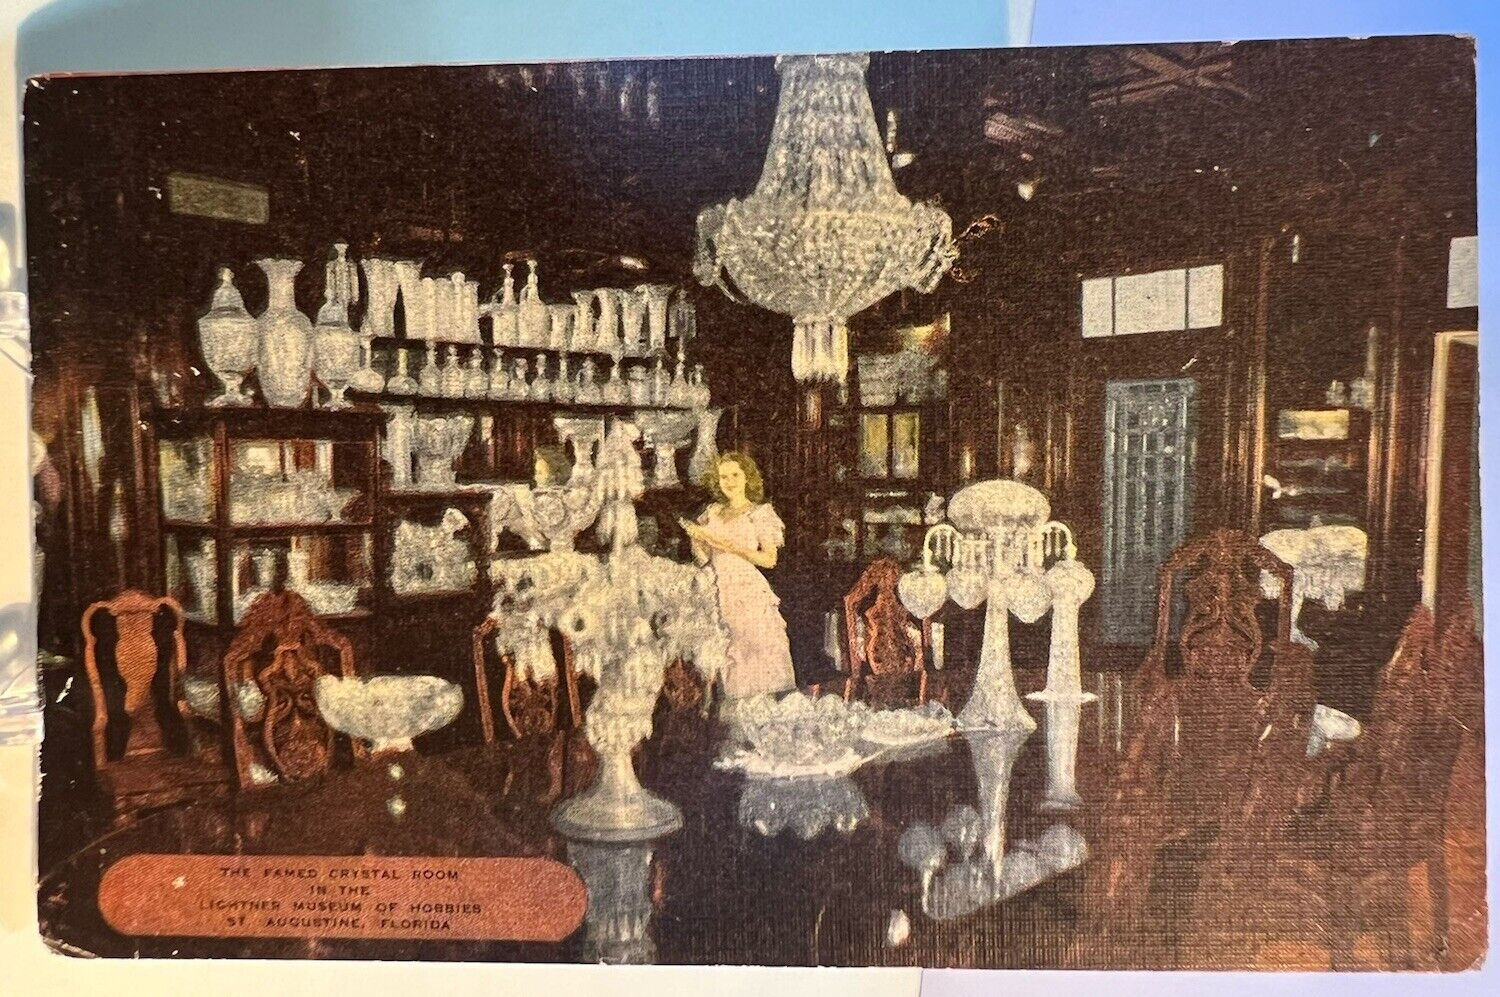 Postcard The Famed Crystal Room, Lightner Museum, St. Augustine, Florida 